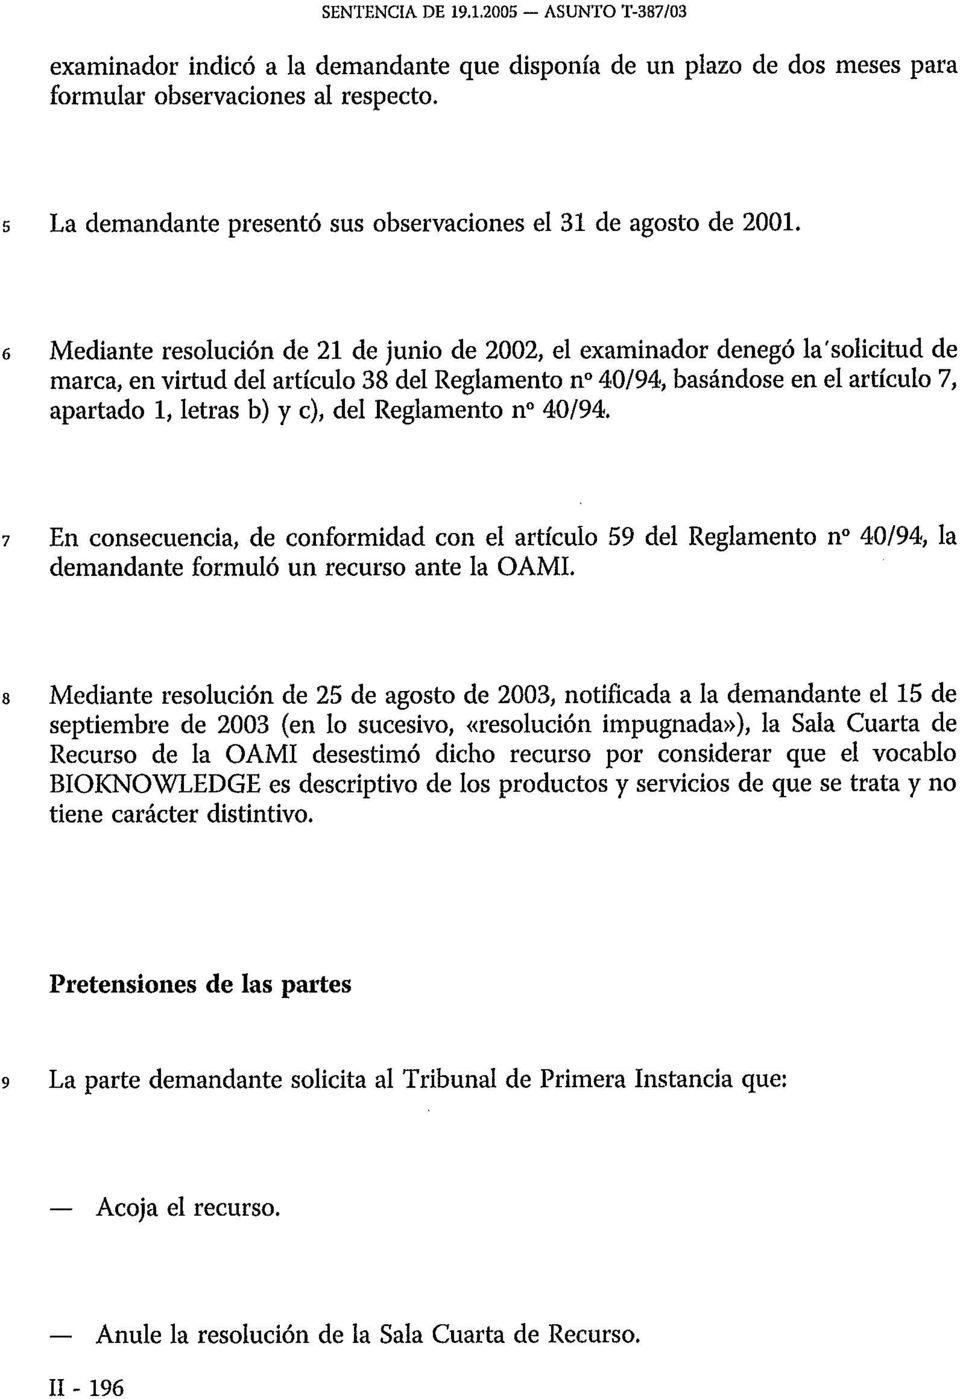 6 Mediante resolución de 21 de junio de 2002, el examinador denegó la'solicitud de marca, en virtud del artículo 38 del Reglamento n 40/94, basándose en el artículo 7, apartado 1, letras b) y c), del